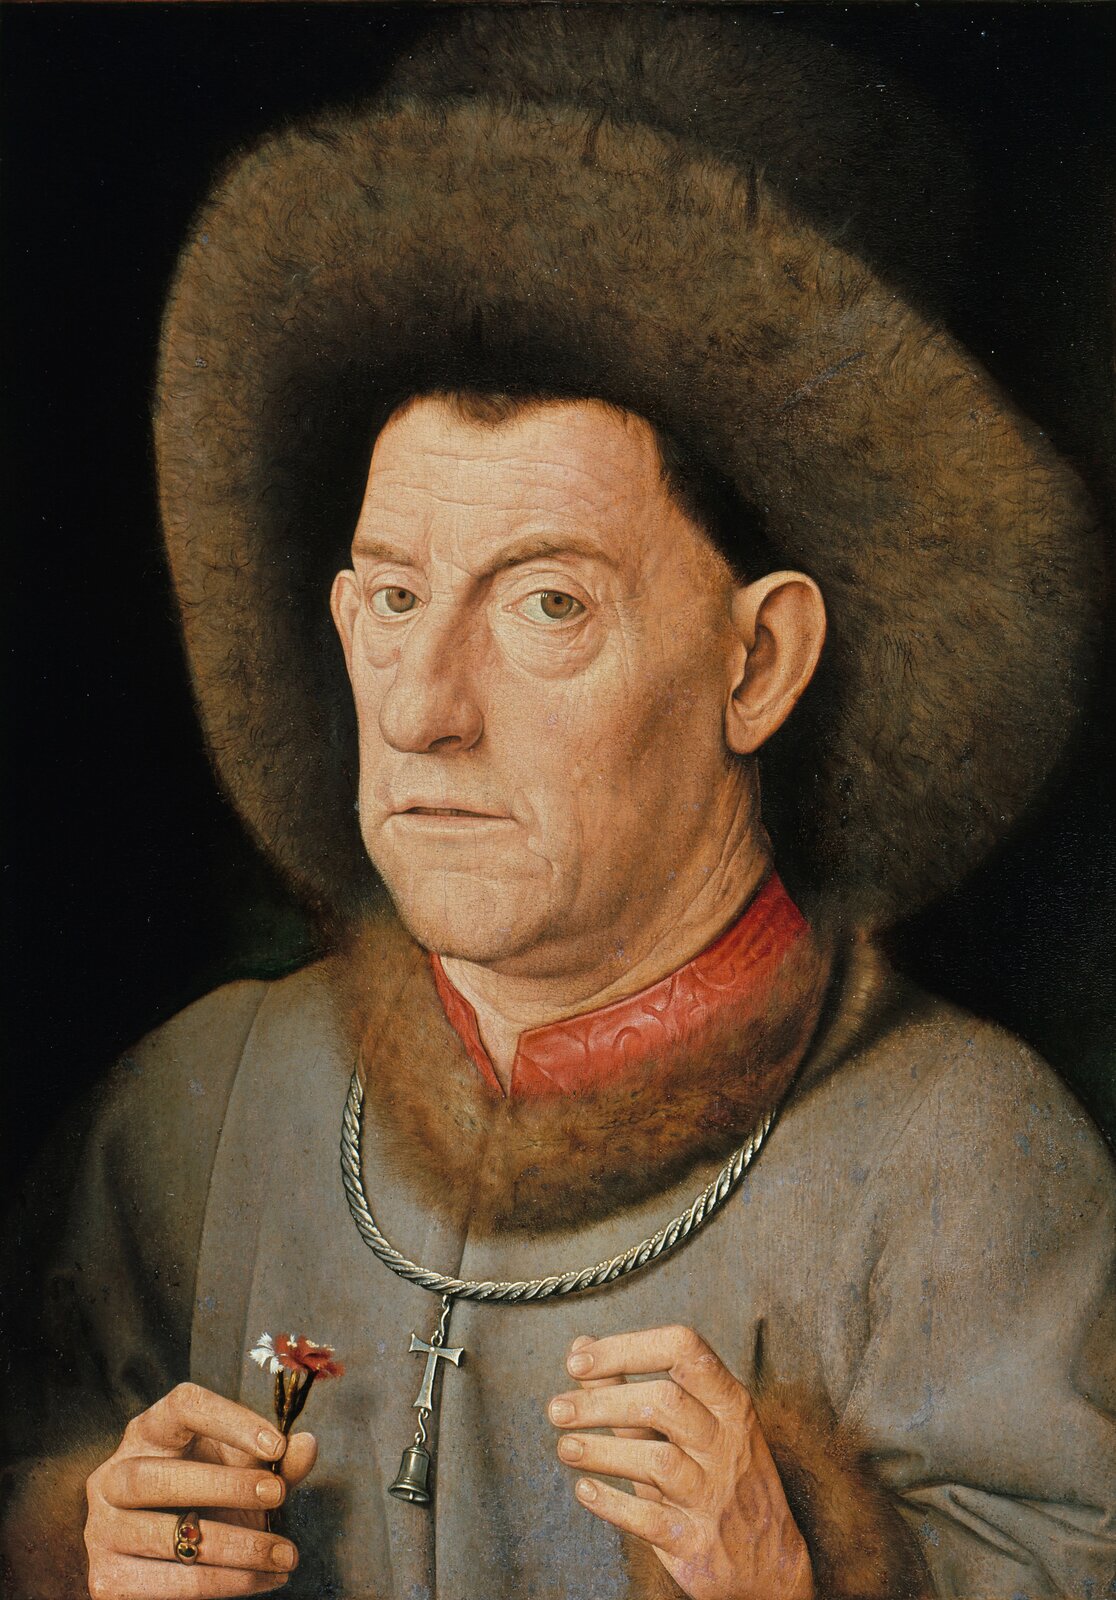 Ilustracja przedstawia obraz Jana van Eycka „Portret mężczyzny z goździkiem”. Ukazuje portret ujęty z lewego półprofilu. Mężczyzna w starszym wieku na na głowie futrzaną czapkę. Również futrem obszyty jest kołnierz płaszcza, spod którego wystaje czerwona stójka. Na szyi mężczyzna ma zawieszony krzyż z dzwoneczkiem, zamocowany na grubym łańcuchu .W ręku trzyma czerwono-biały goździk.